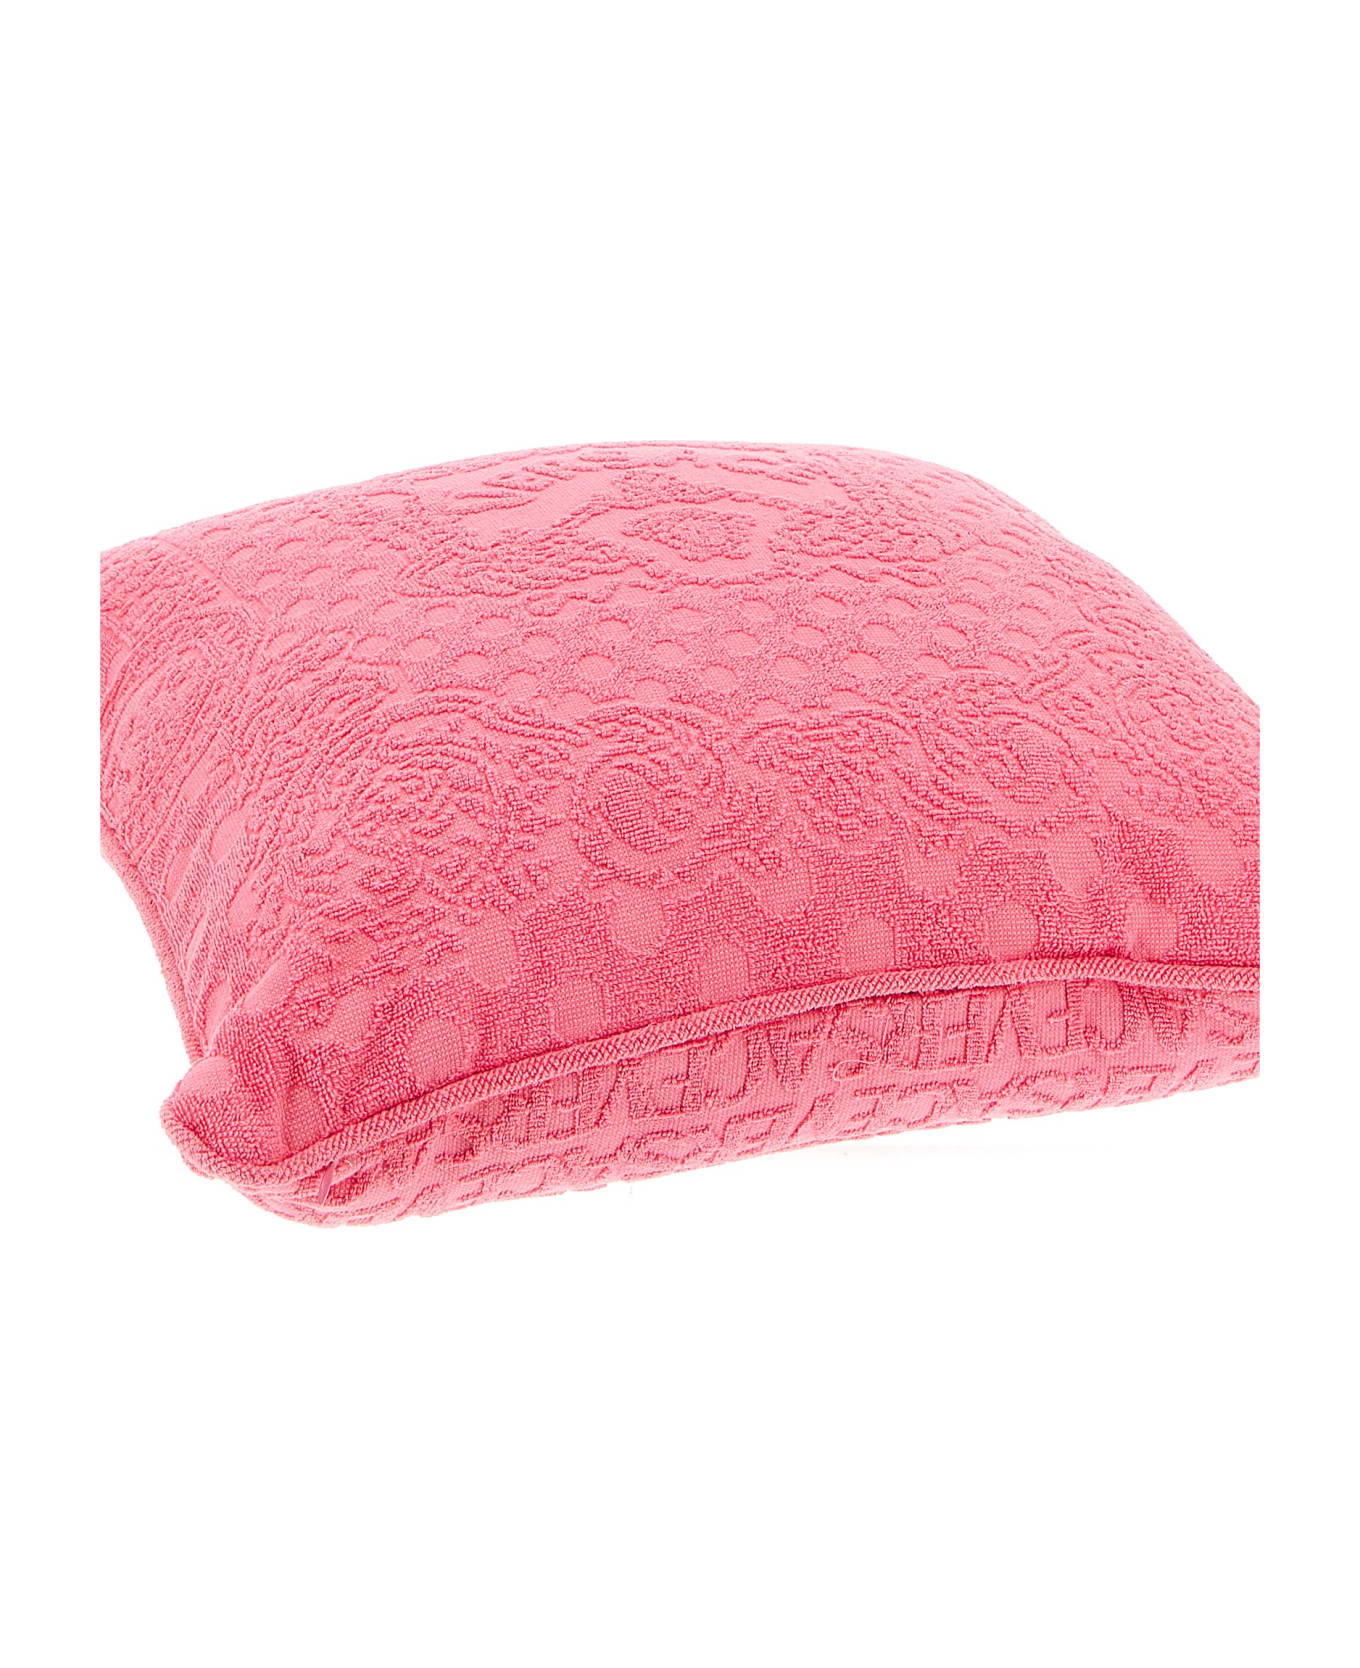 Versace 'seashell Baroque' Cushion With La Vacanza Caspule - Pink